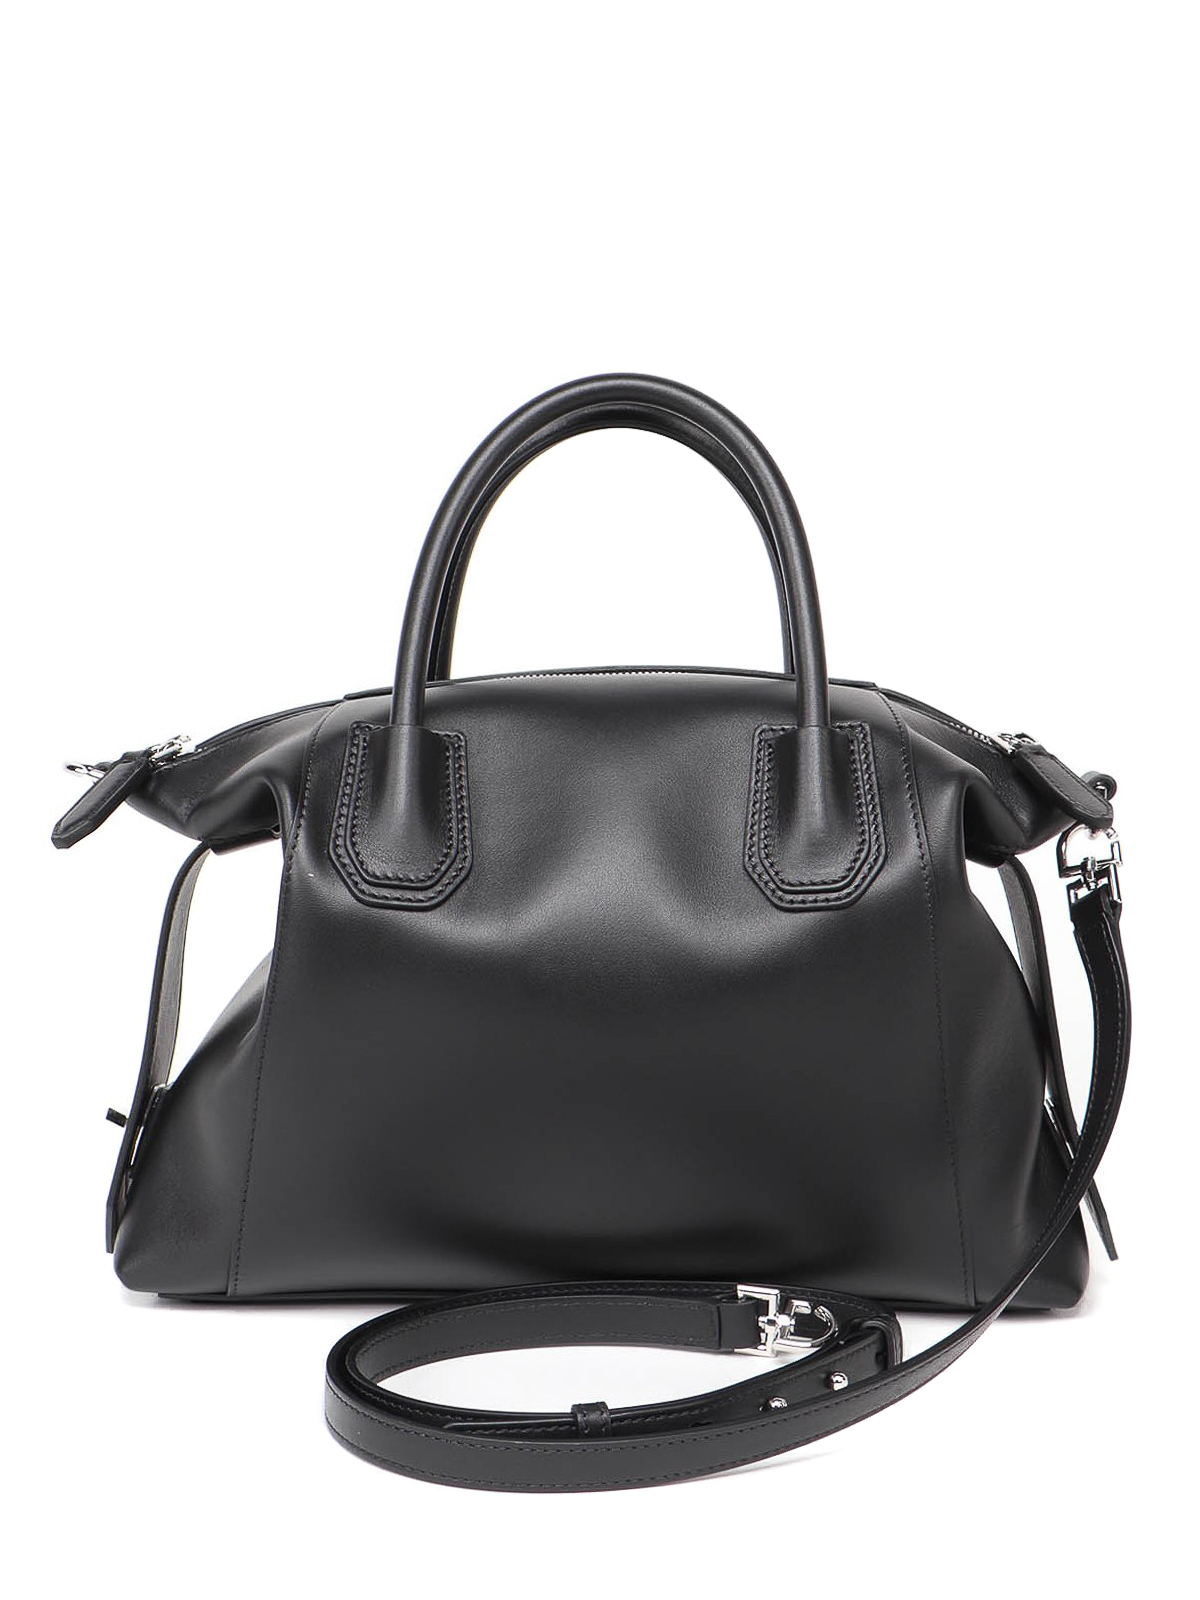 Givenchy Antigona Soft Small Leather Bag - Black Handle Bags